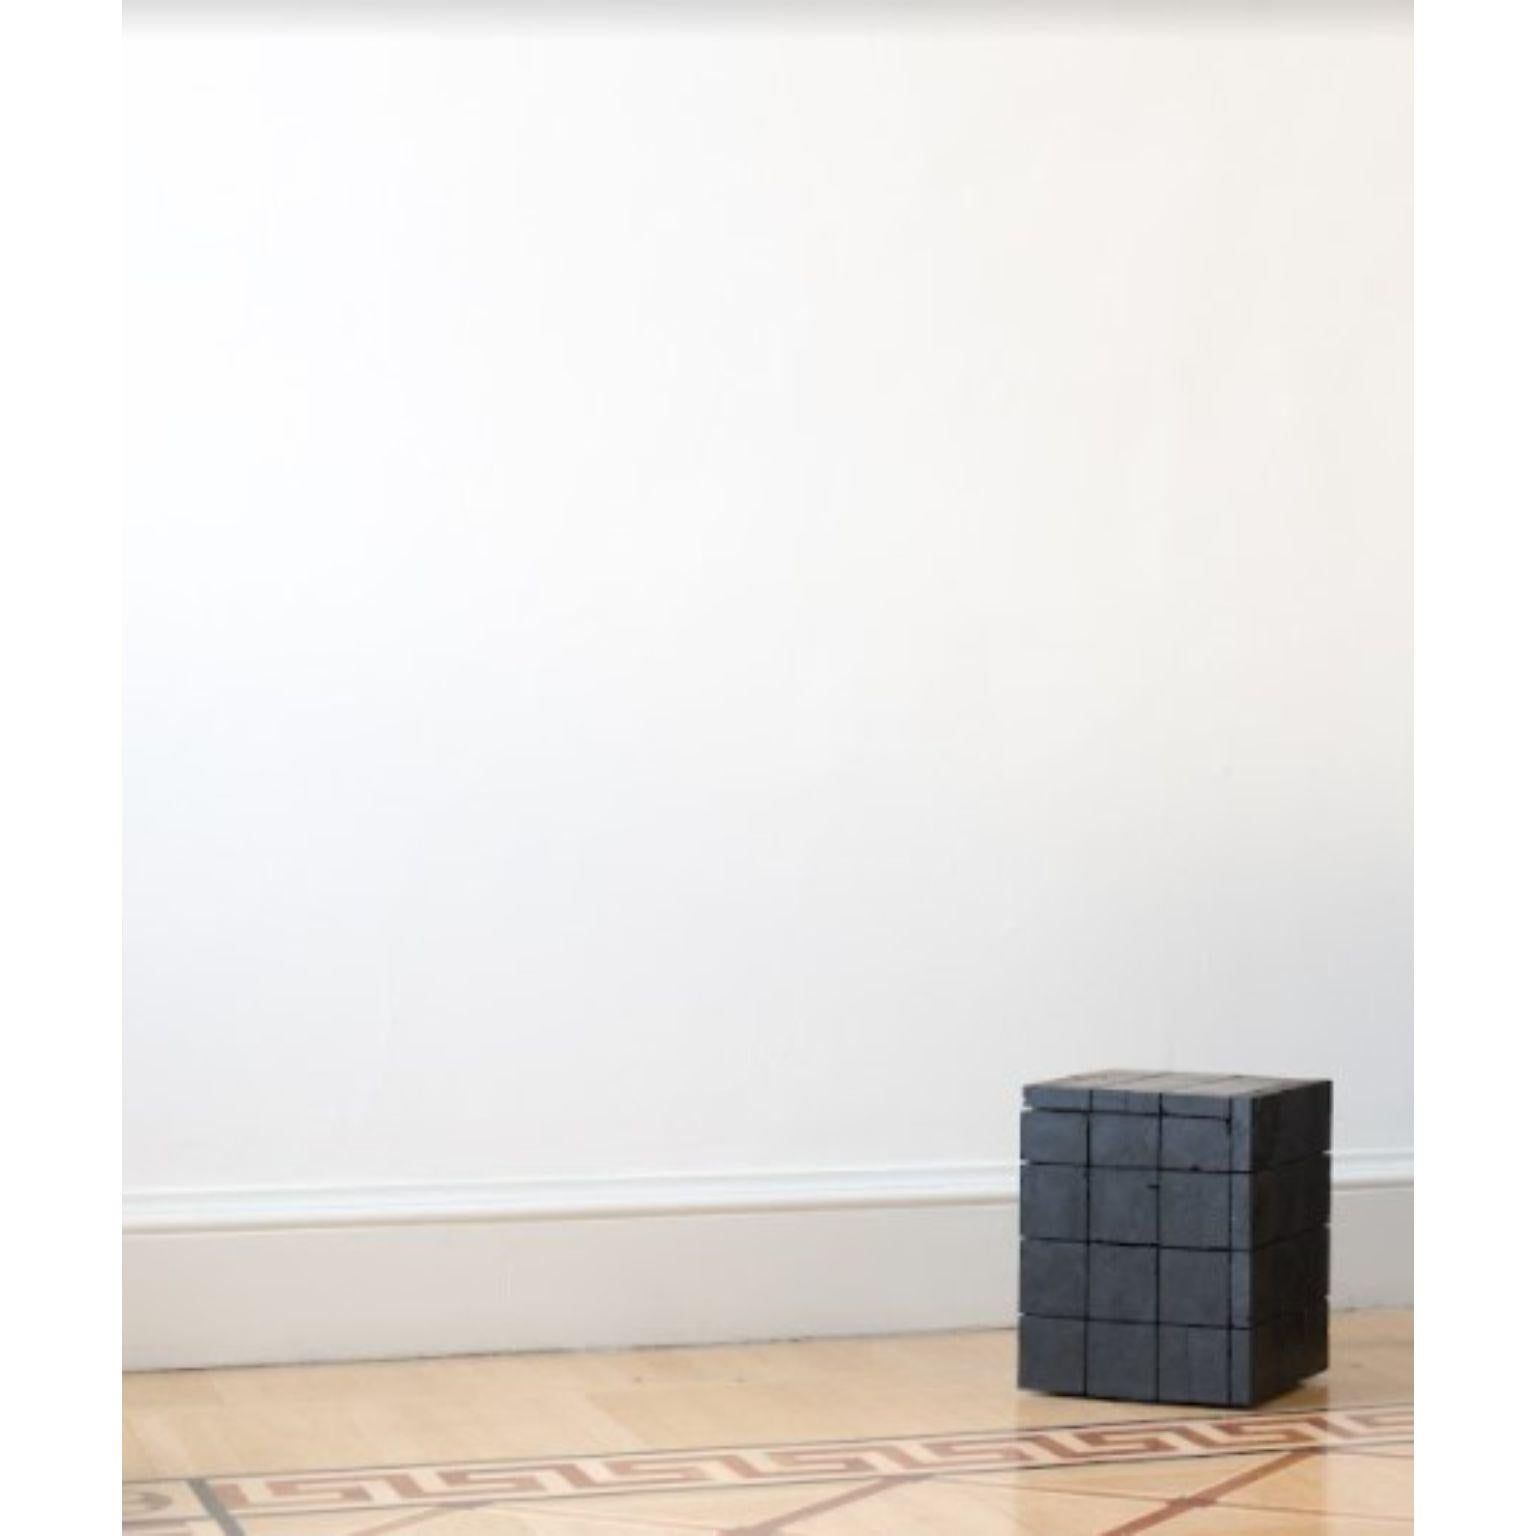 Table d'appoint 018 de Jesper Eriksson
Dimensions : D 43,5 x L 47,7 x H 49,2 cm 
MATERIAL : Charbon anthracite, cadre en bois
Poids : 60 kg

Jesper Eriksson (né en 1990 à Paris) est un artiste et un designer basé à Londres, qui s'intéresse au